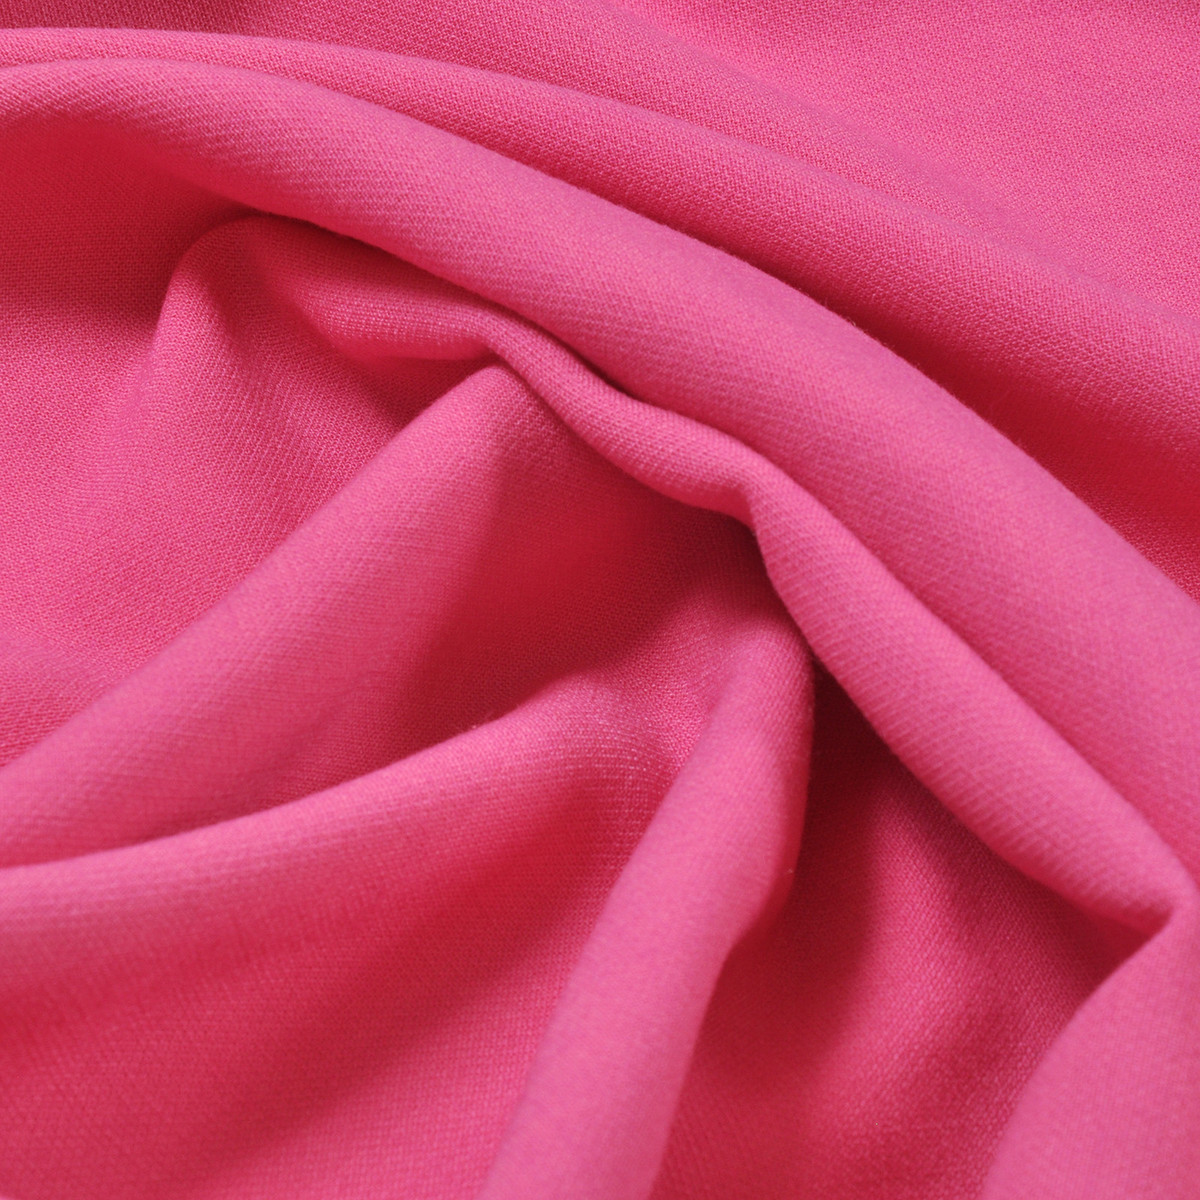 Хлопок сжатый. Розовая костюмная ткань. Розовая ткань. Розовая ткань хлопок. Розовая плотная ткань.